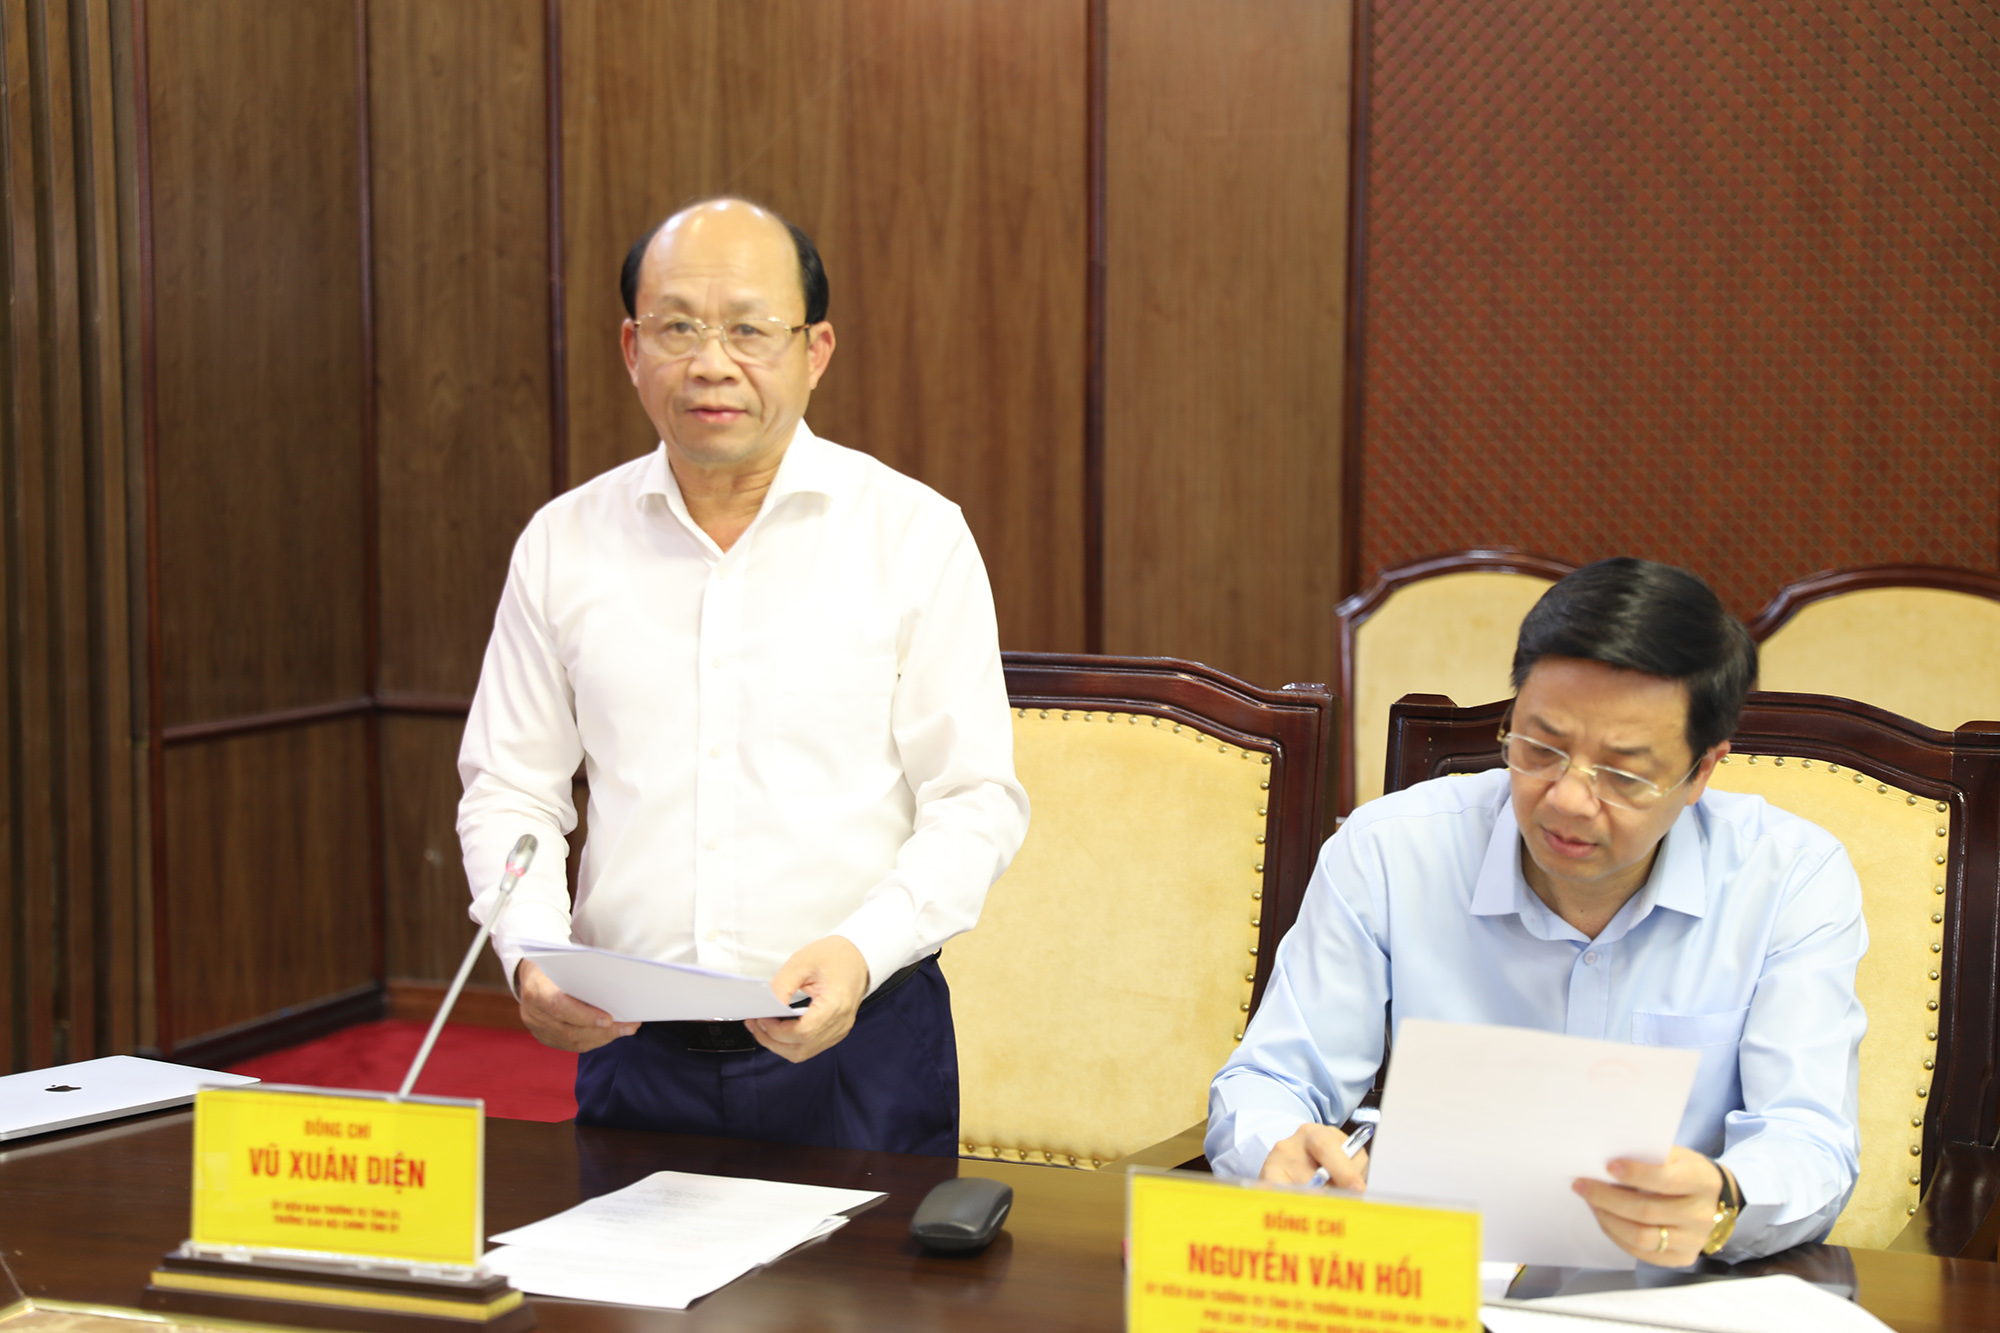 Đồng chí Vũ Xuân Diện, Trường Ban Nội chính Tỉnh ủy báo cáo công tác nội chính thời gian qua